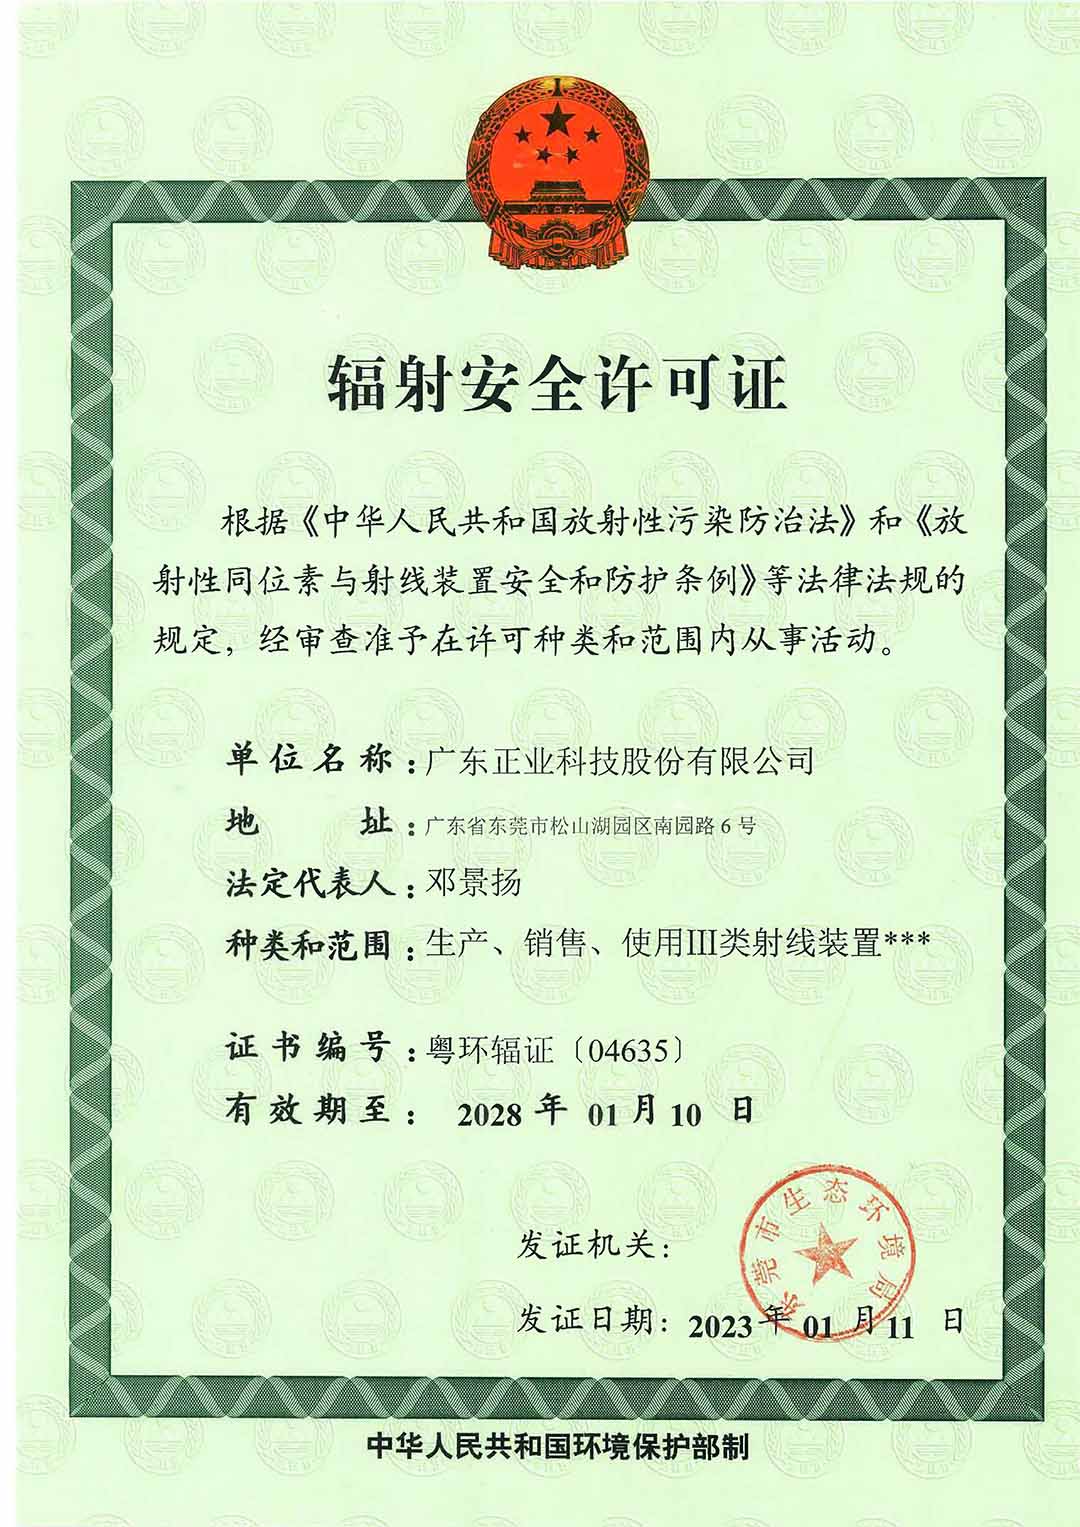 广东正业科技股份有限公司